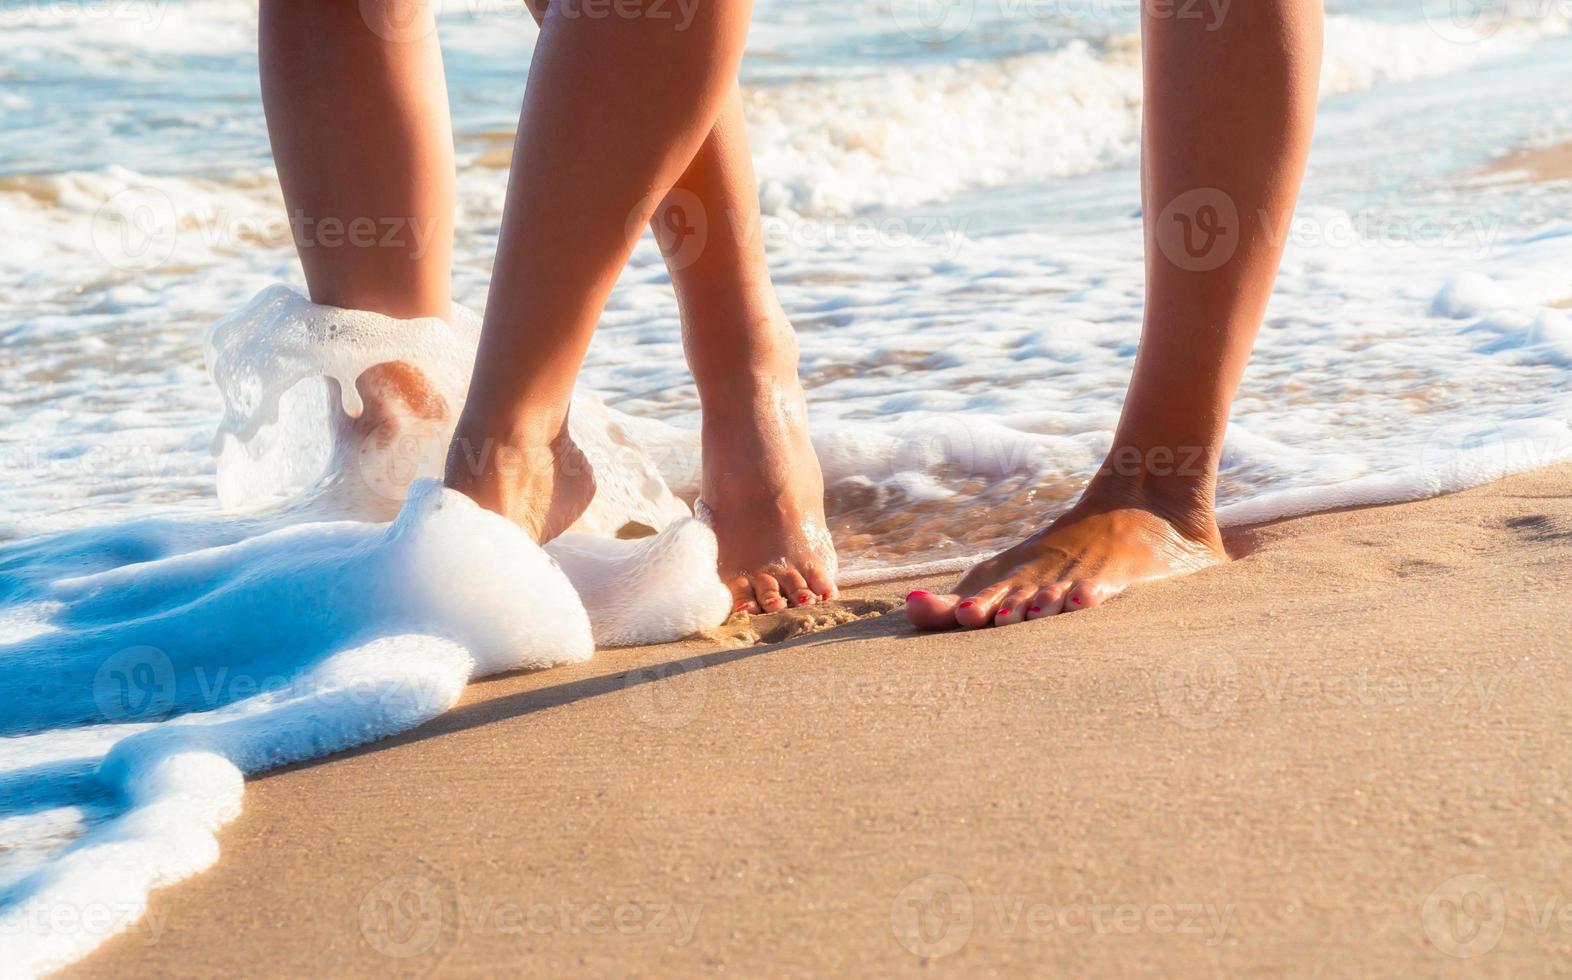 pies descalzos caminando en la playa foto